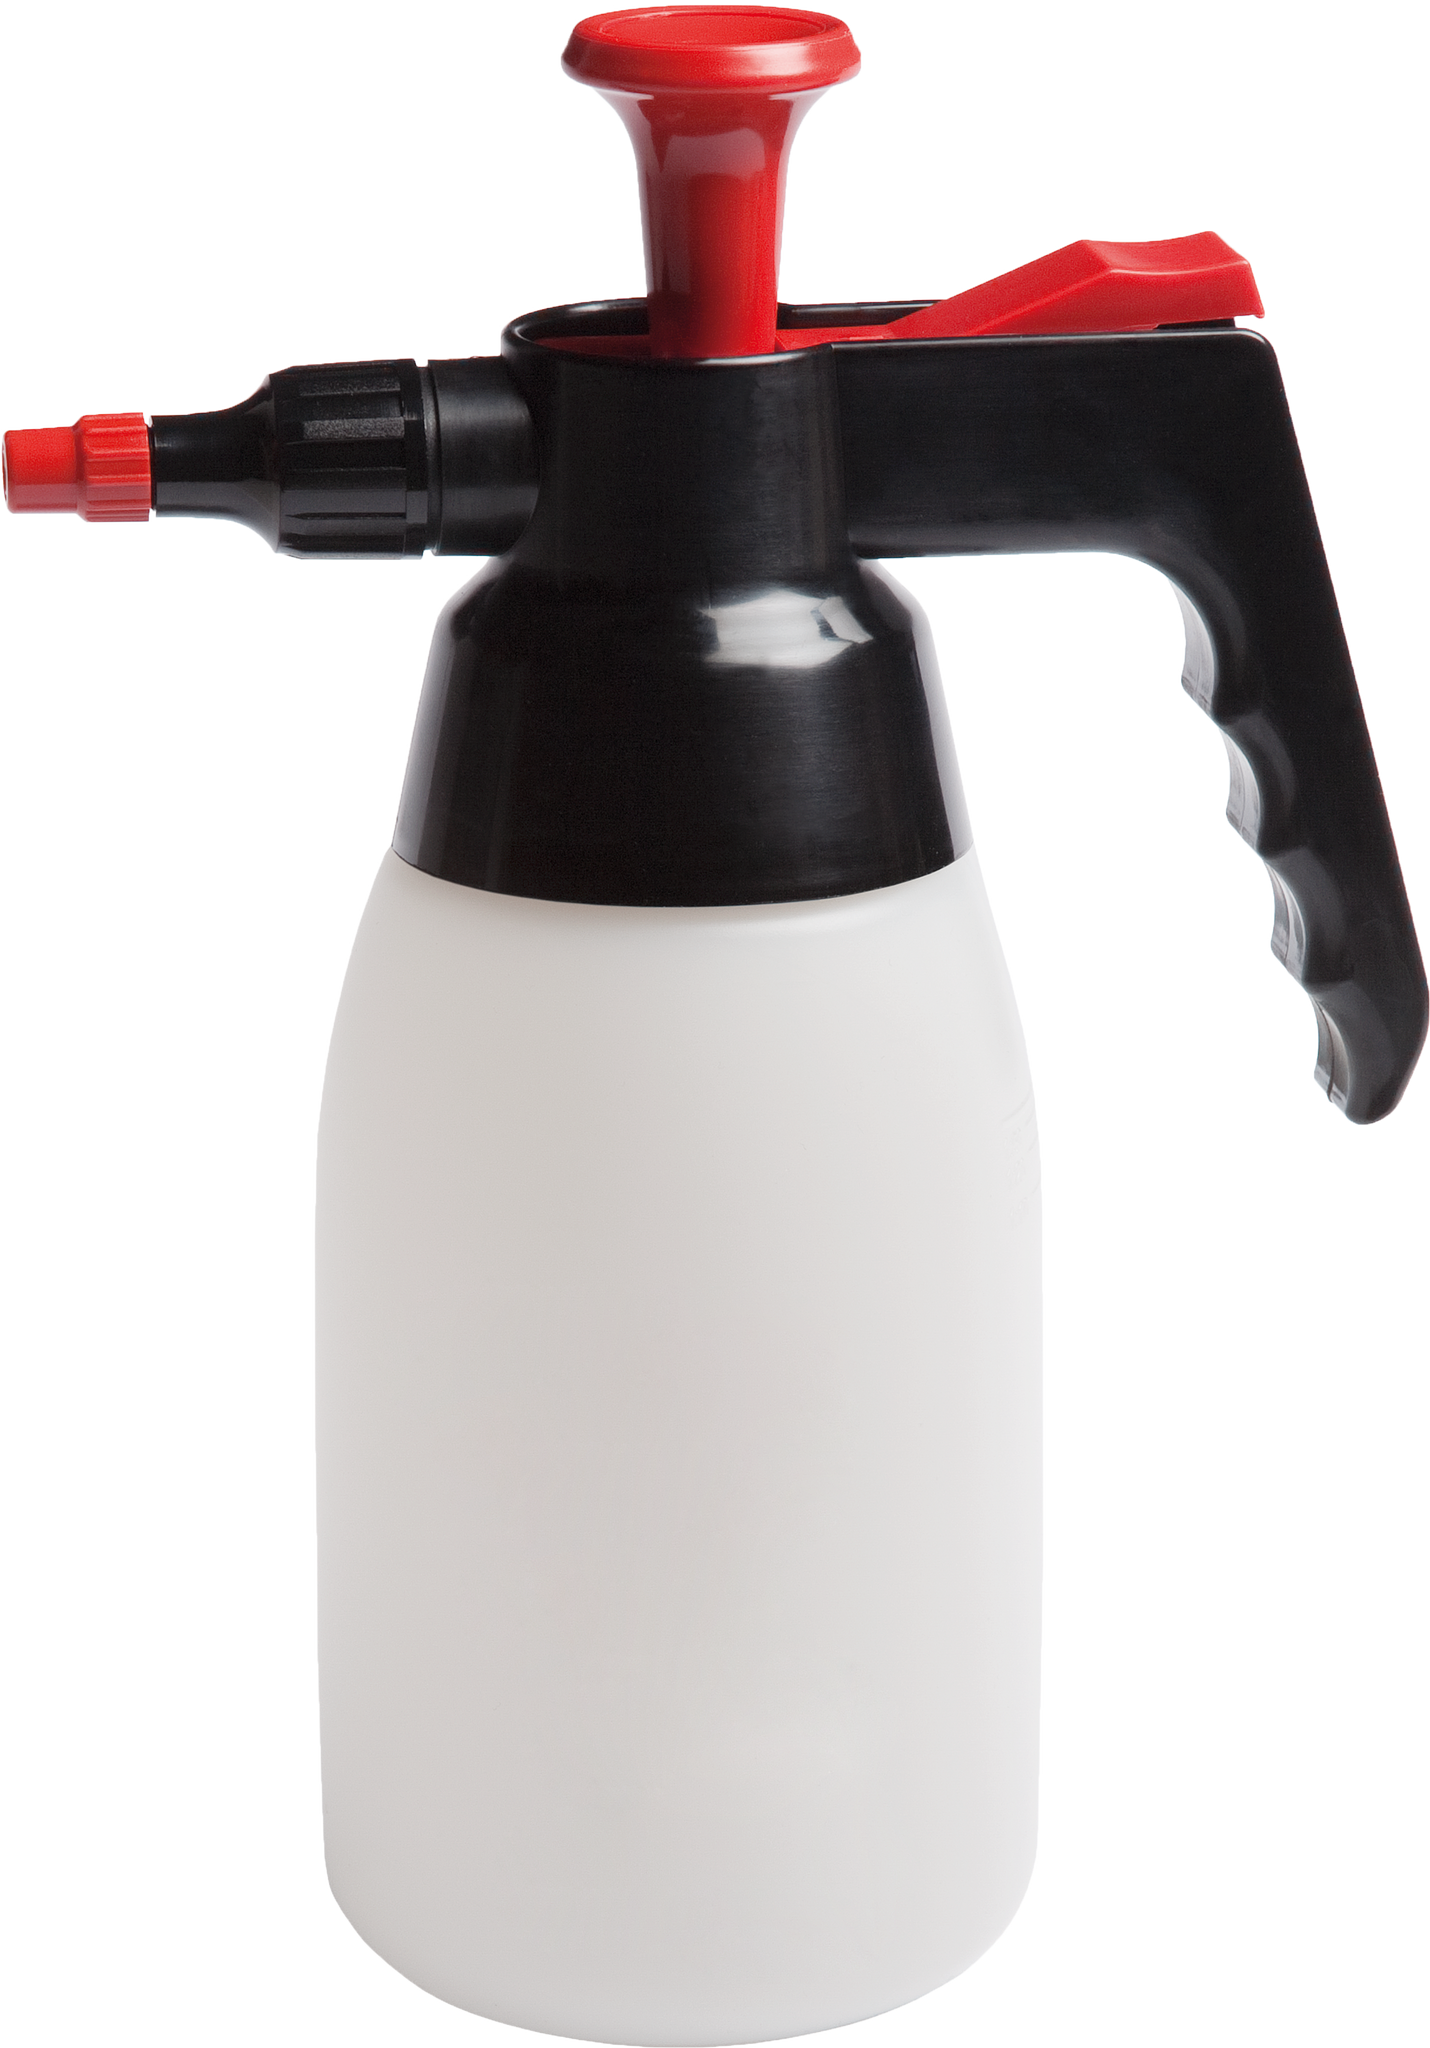 Pump Spray Bottle